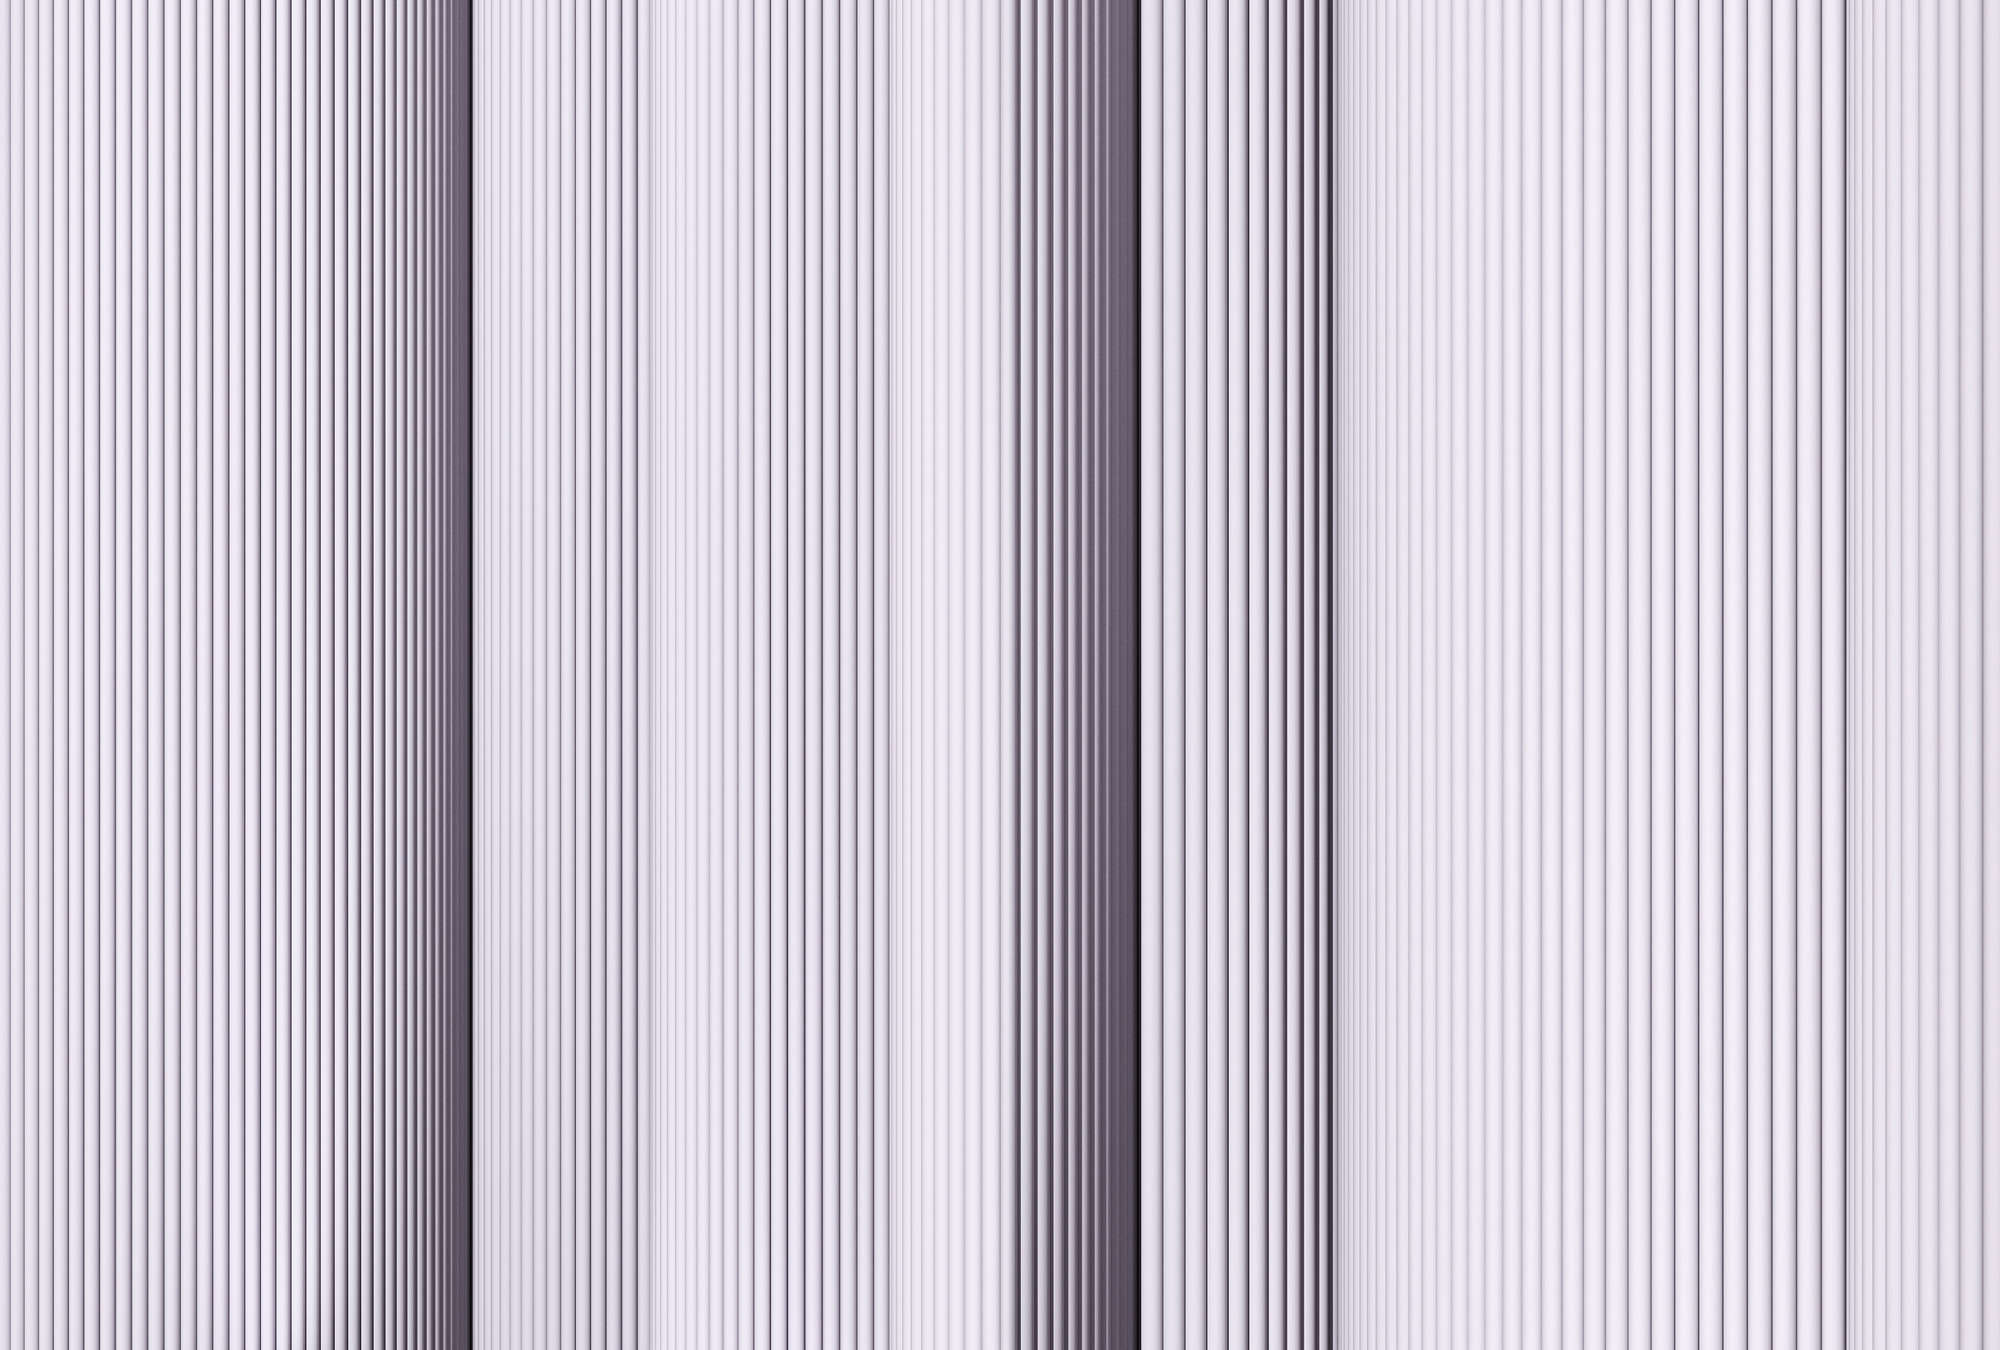             Magic Wall 1 - papier peint rayé effet 3D illusion, violet & blanc
        